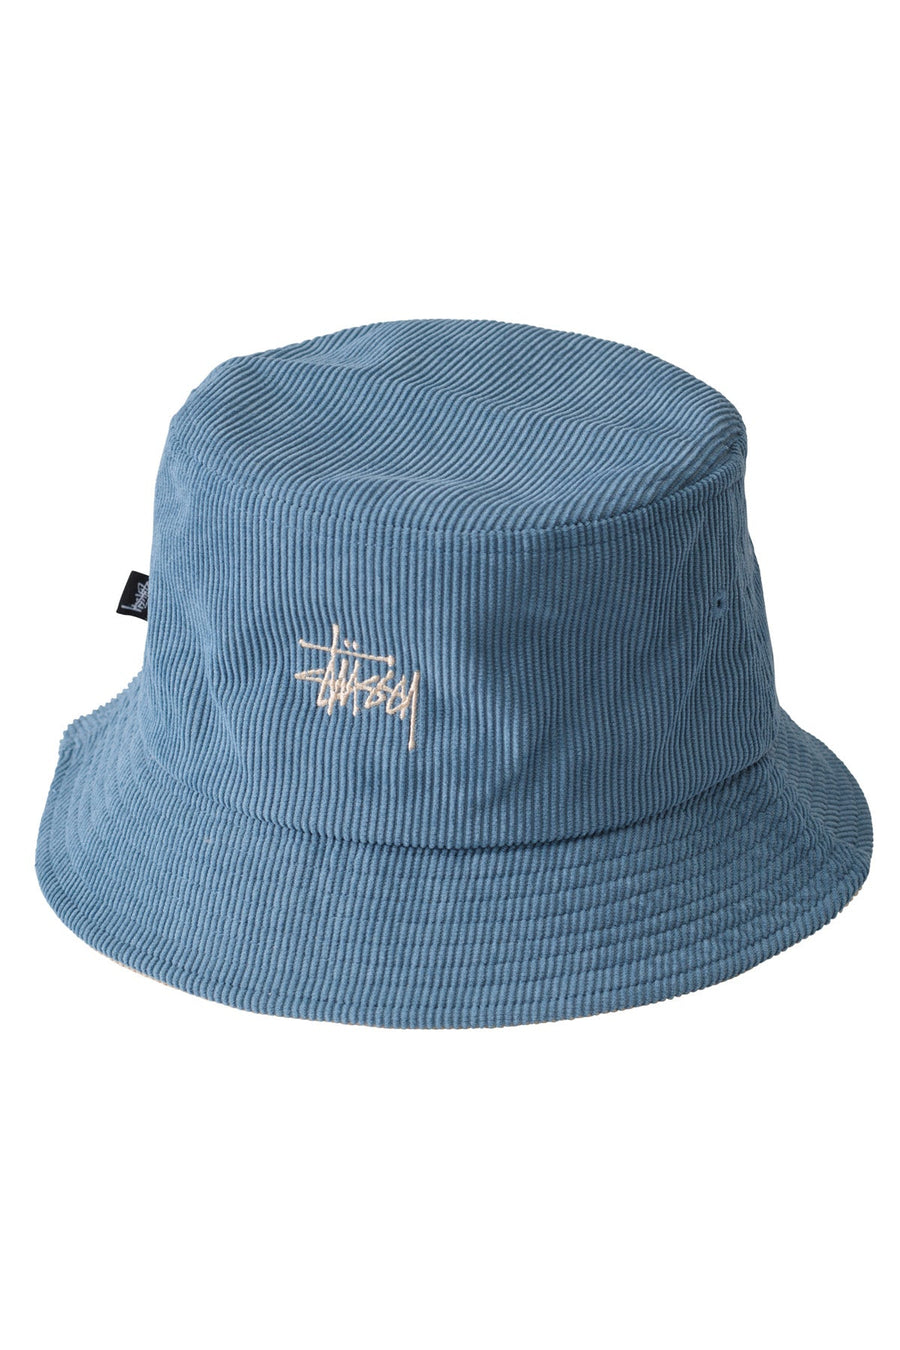 STUSSY GRAFFITI CORD BUCKET HAT - NATURAL/STEEL BLUE - WILDROSE